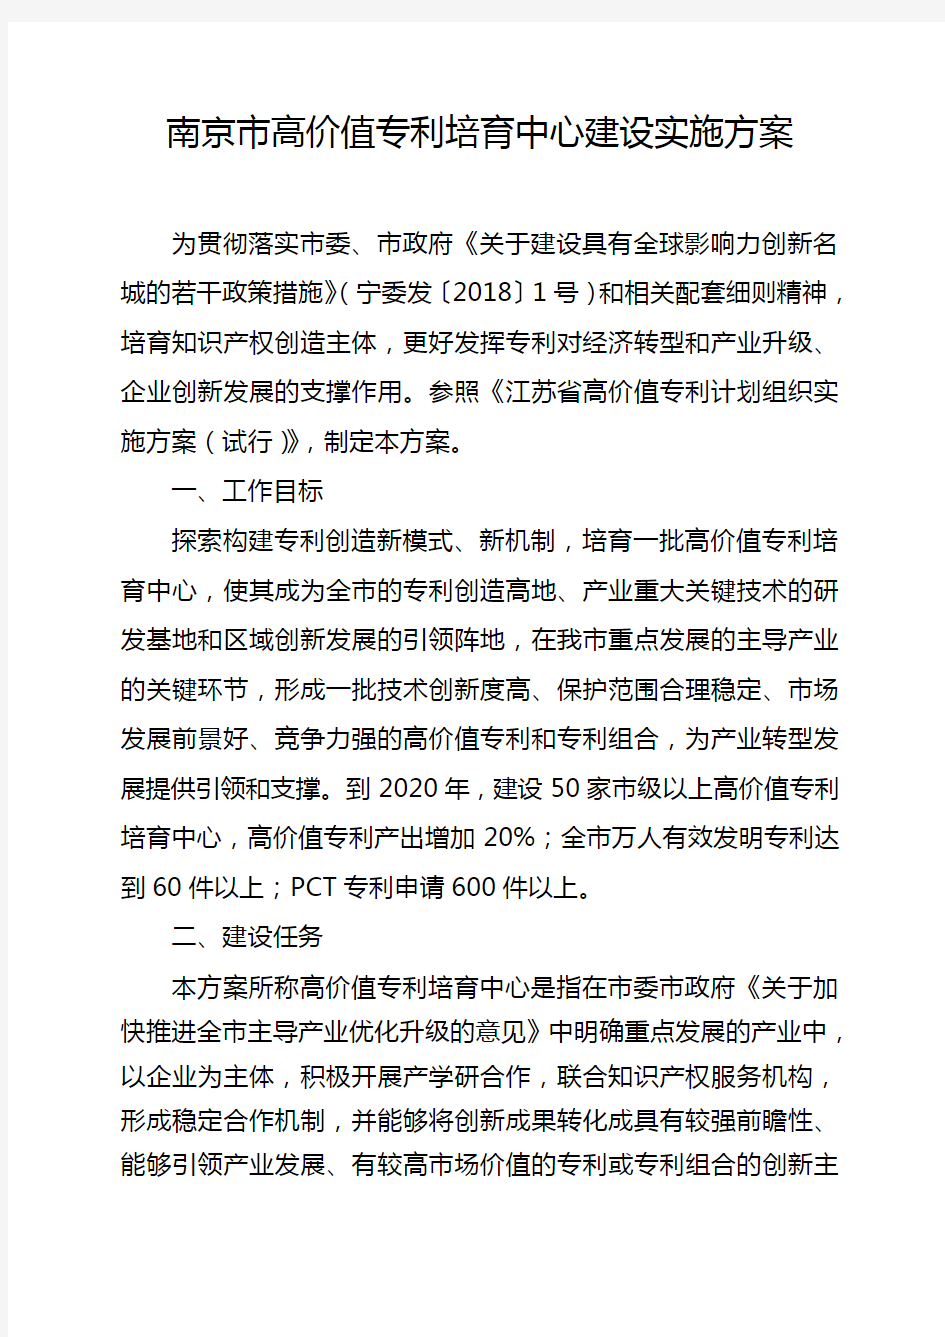 南京市高价值专利培育中心建设实施方案